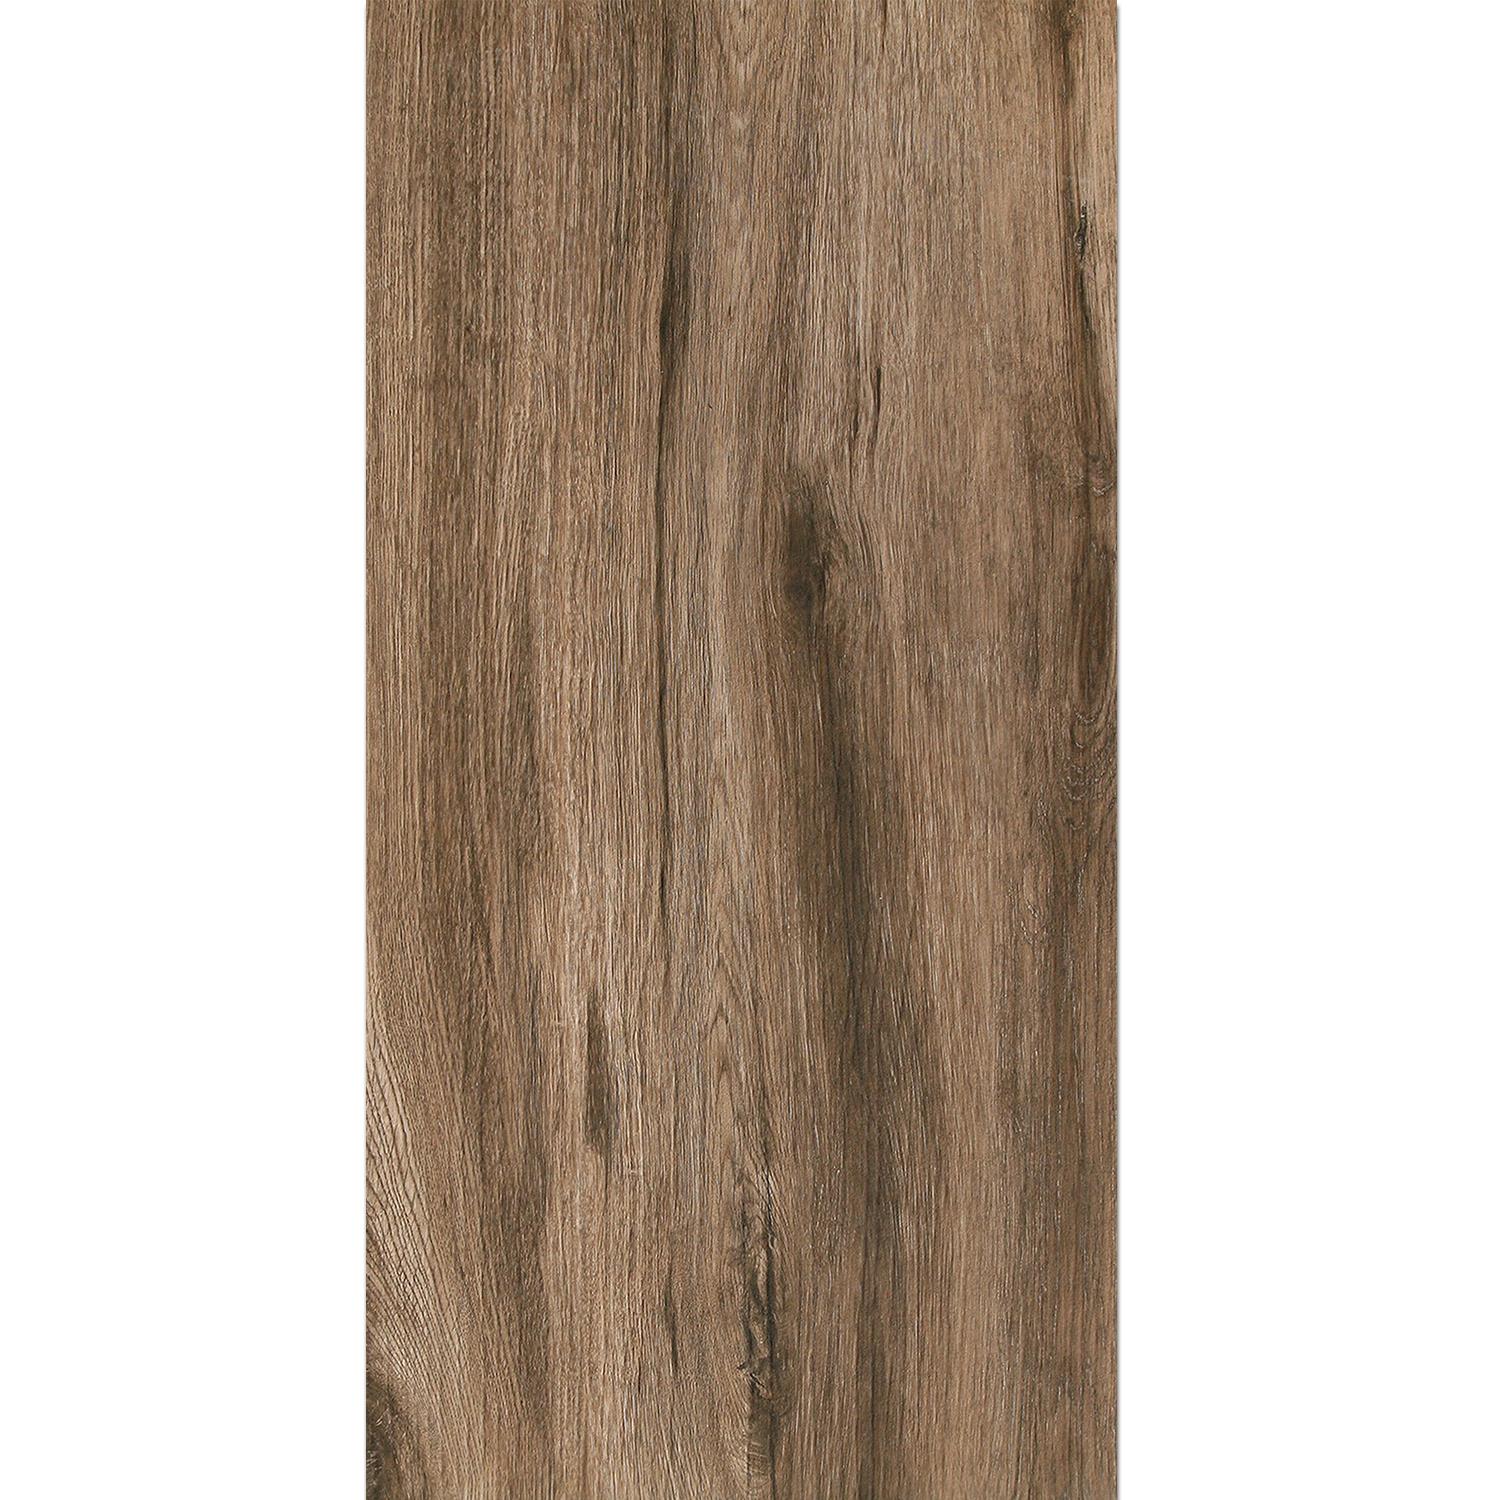 Terrassenplatten Starwood Holzoptik Ebony 45x90cm